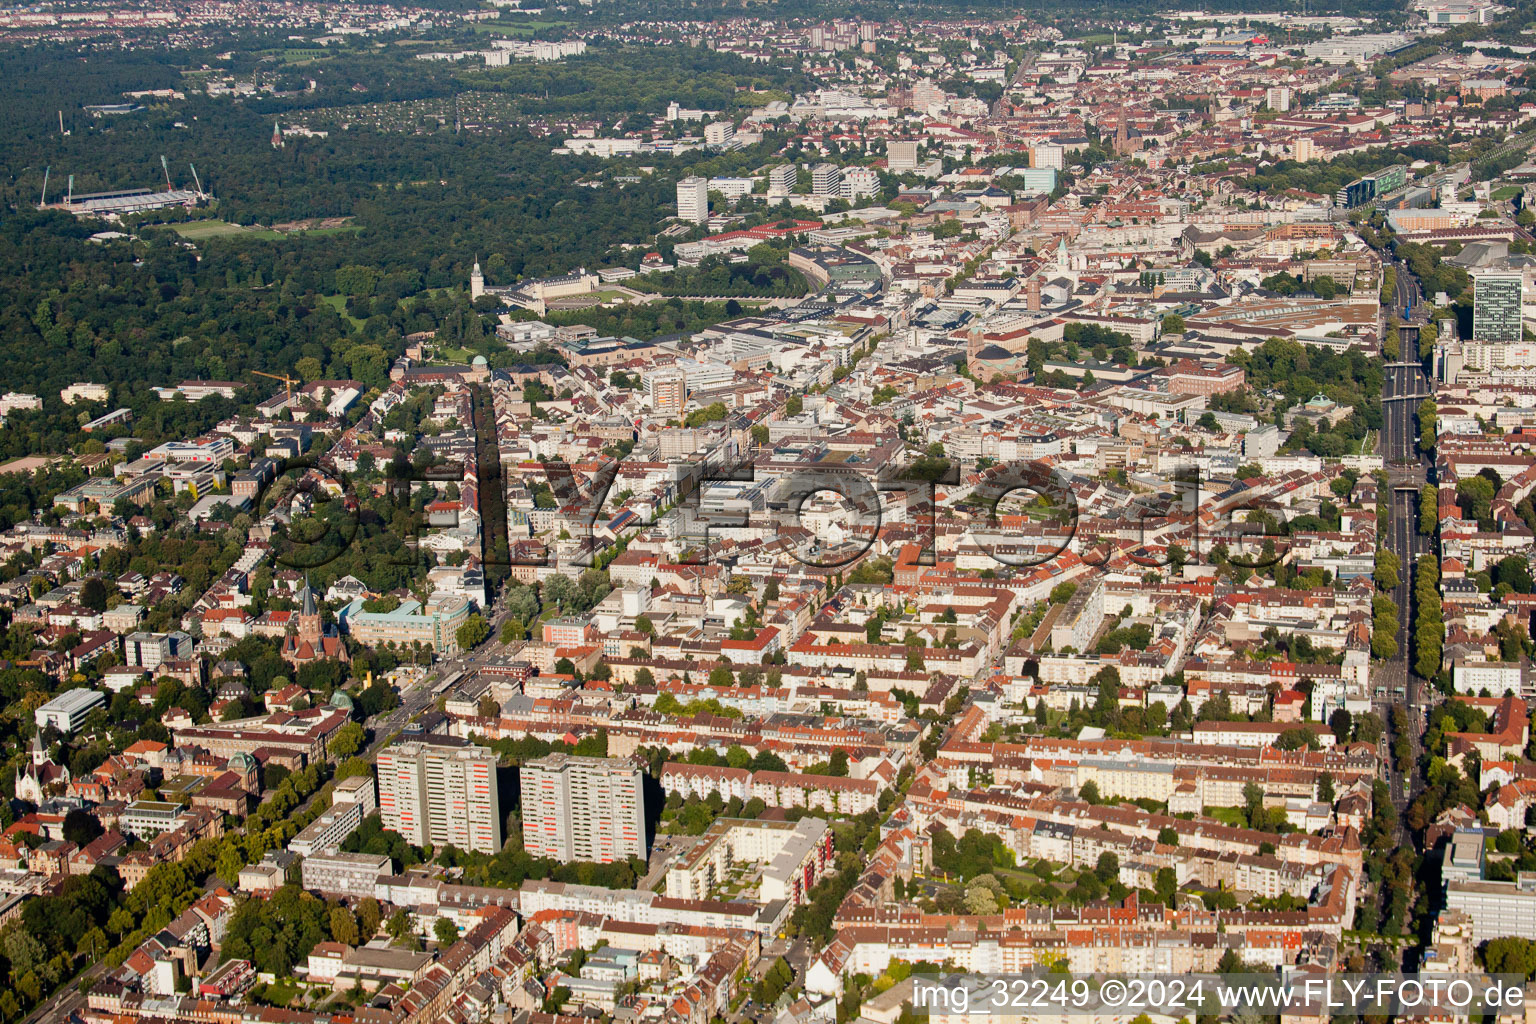 KA, zw. Kaiserallee und Kriegsstr im Ortsteil Weststadt in Karlsruhe im Bundesland Baden-Württemberg, Deutschland